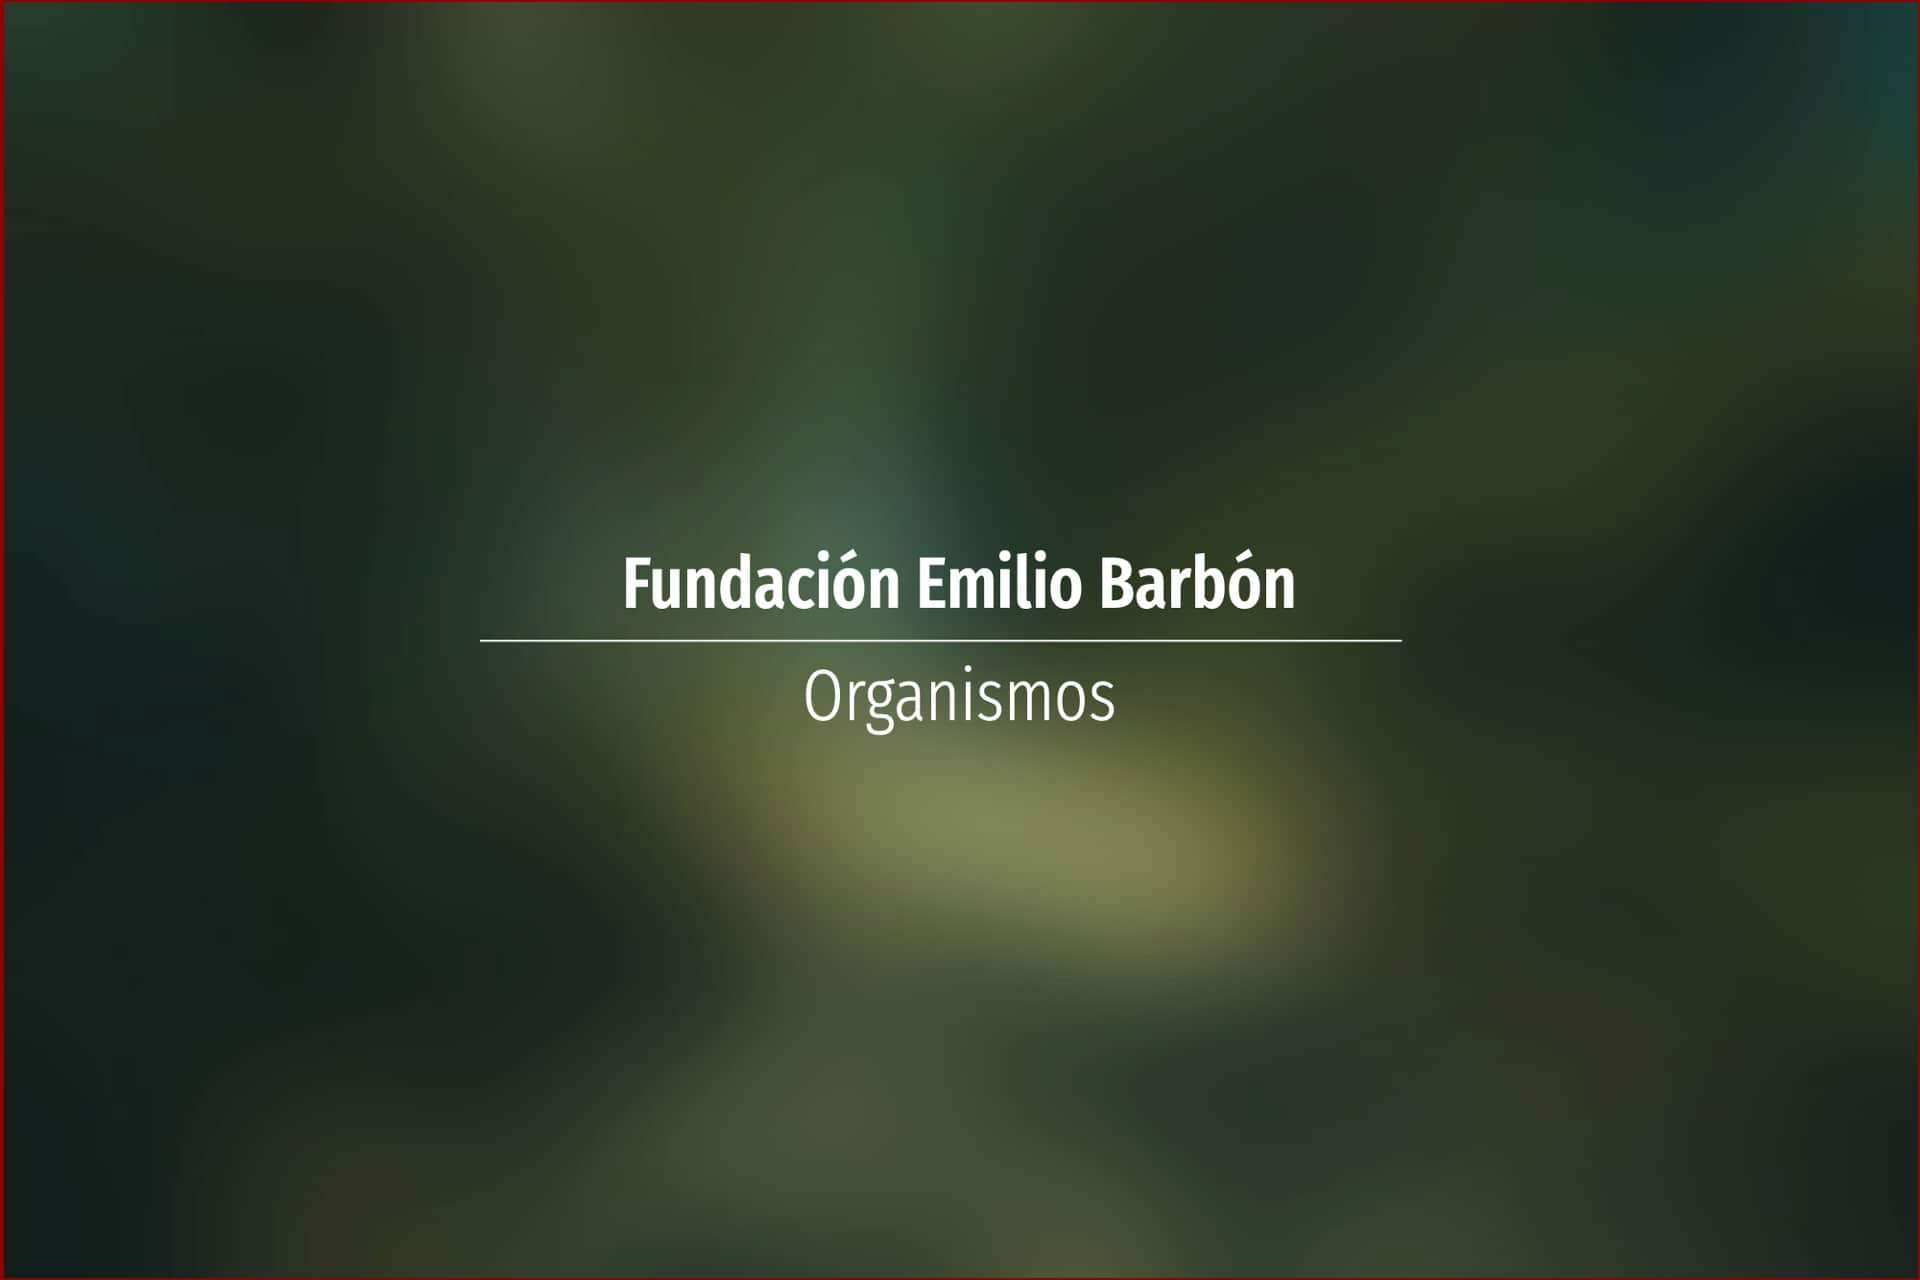 Fundación Emilio Barbón